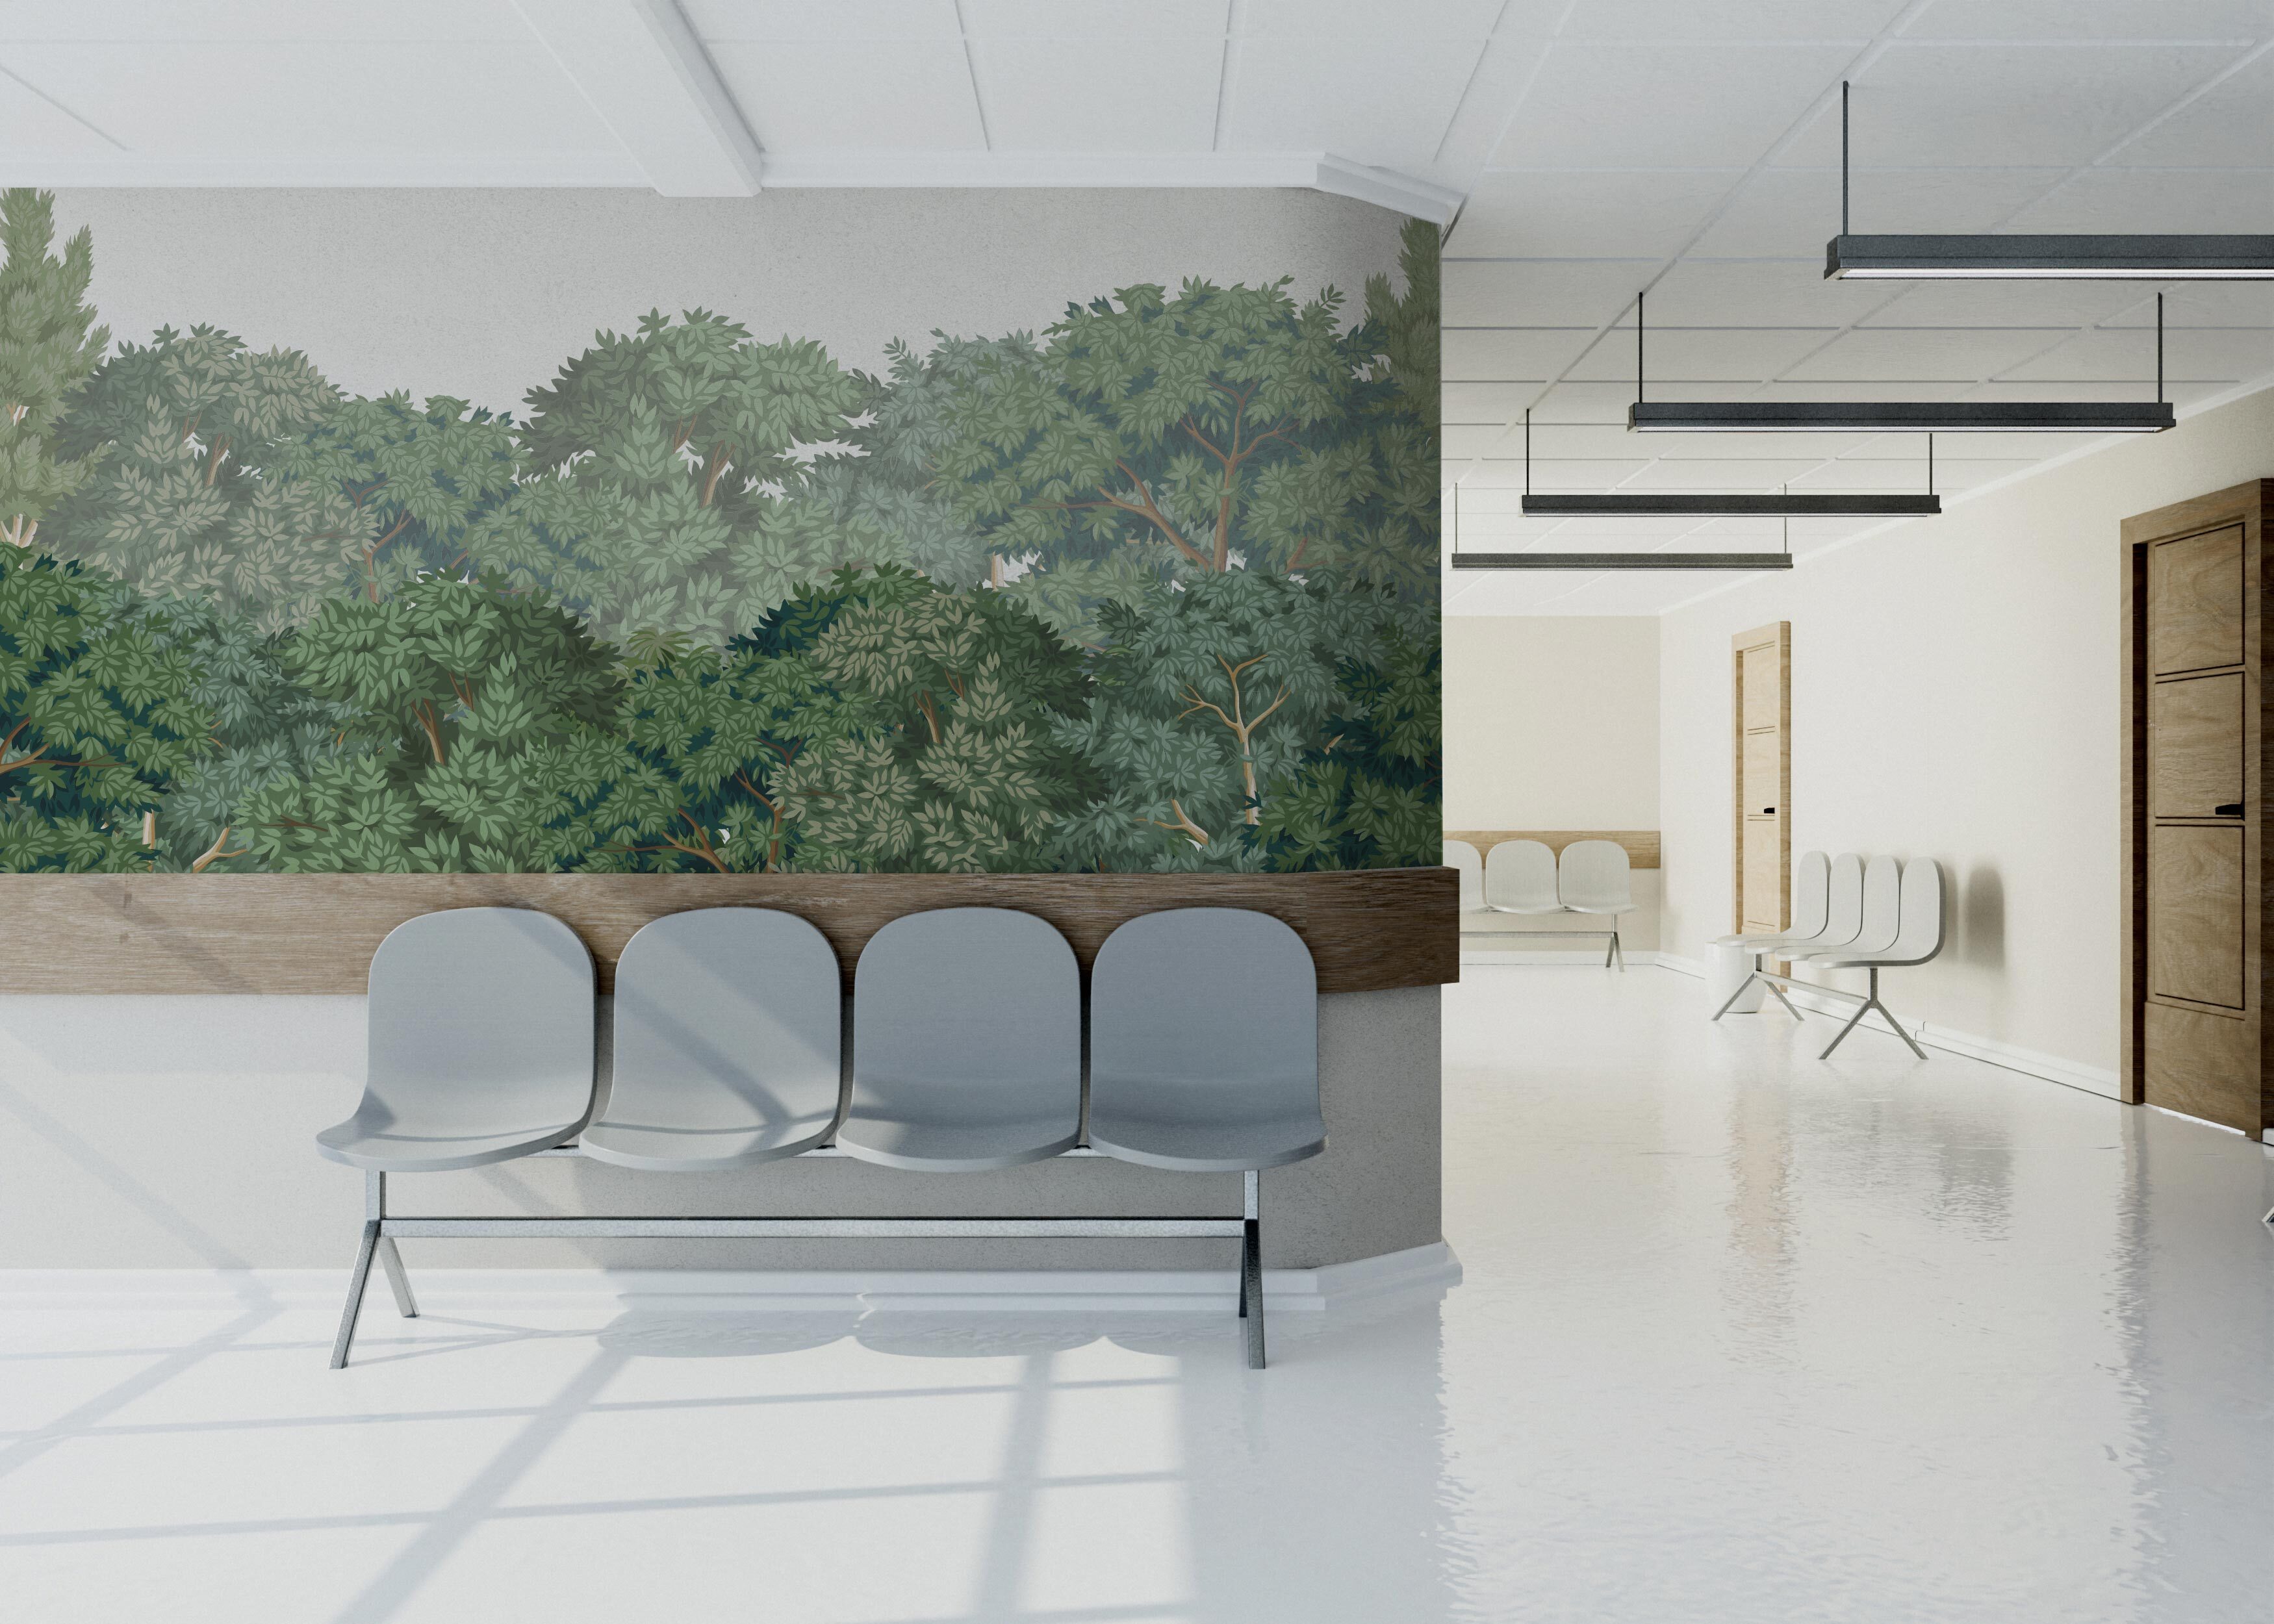 Salle d'attente avec un papier peint représentant une forêt, embellie par des éléments bois. Une atmosphère naturelle et chaleureuse pour accueillir les patients.